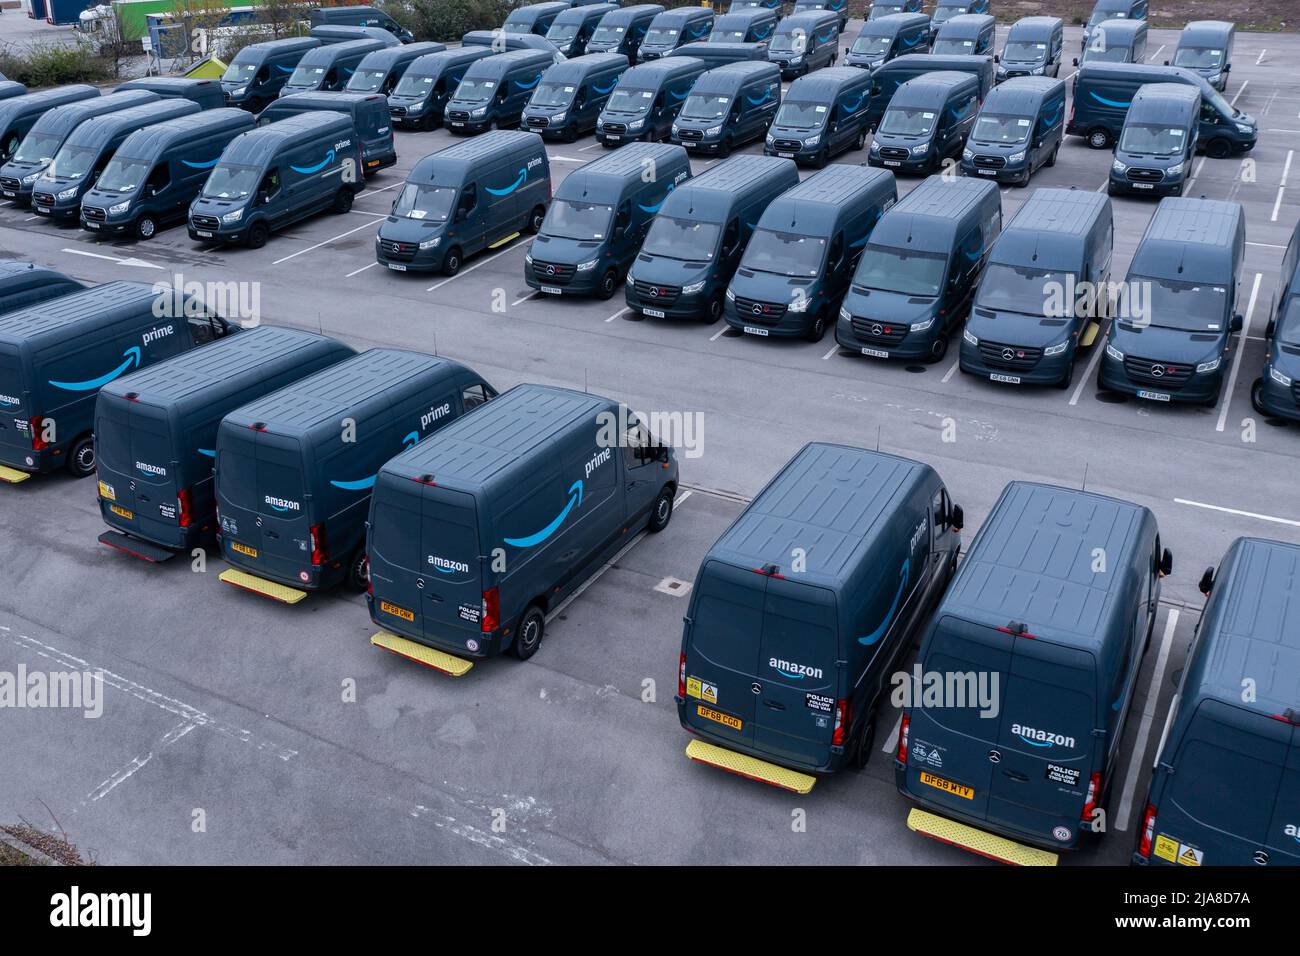 Vue aérienne d'une flotte de fourgonnettes de livraison Amazon Prime pour la livraison de commandes d'achat en ligne depuis les centres de distribution vers les foyers au Royaume-Uni Banque D'Images